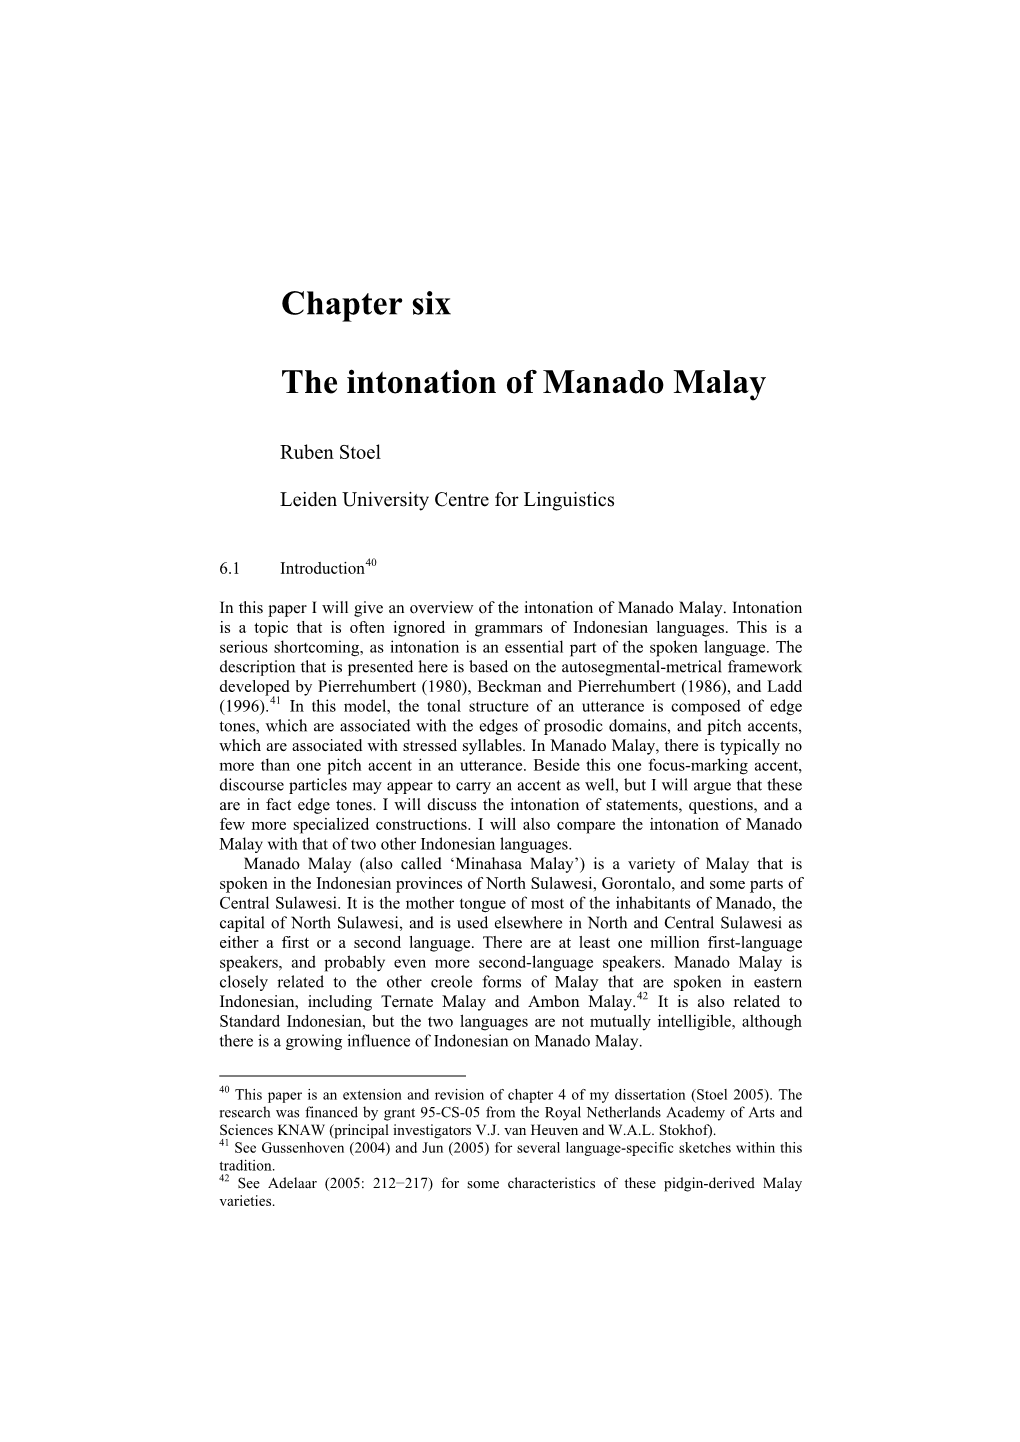 Chapter Six the Intonation of Manado Malay